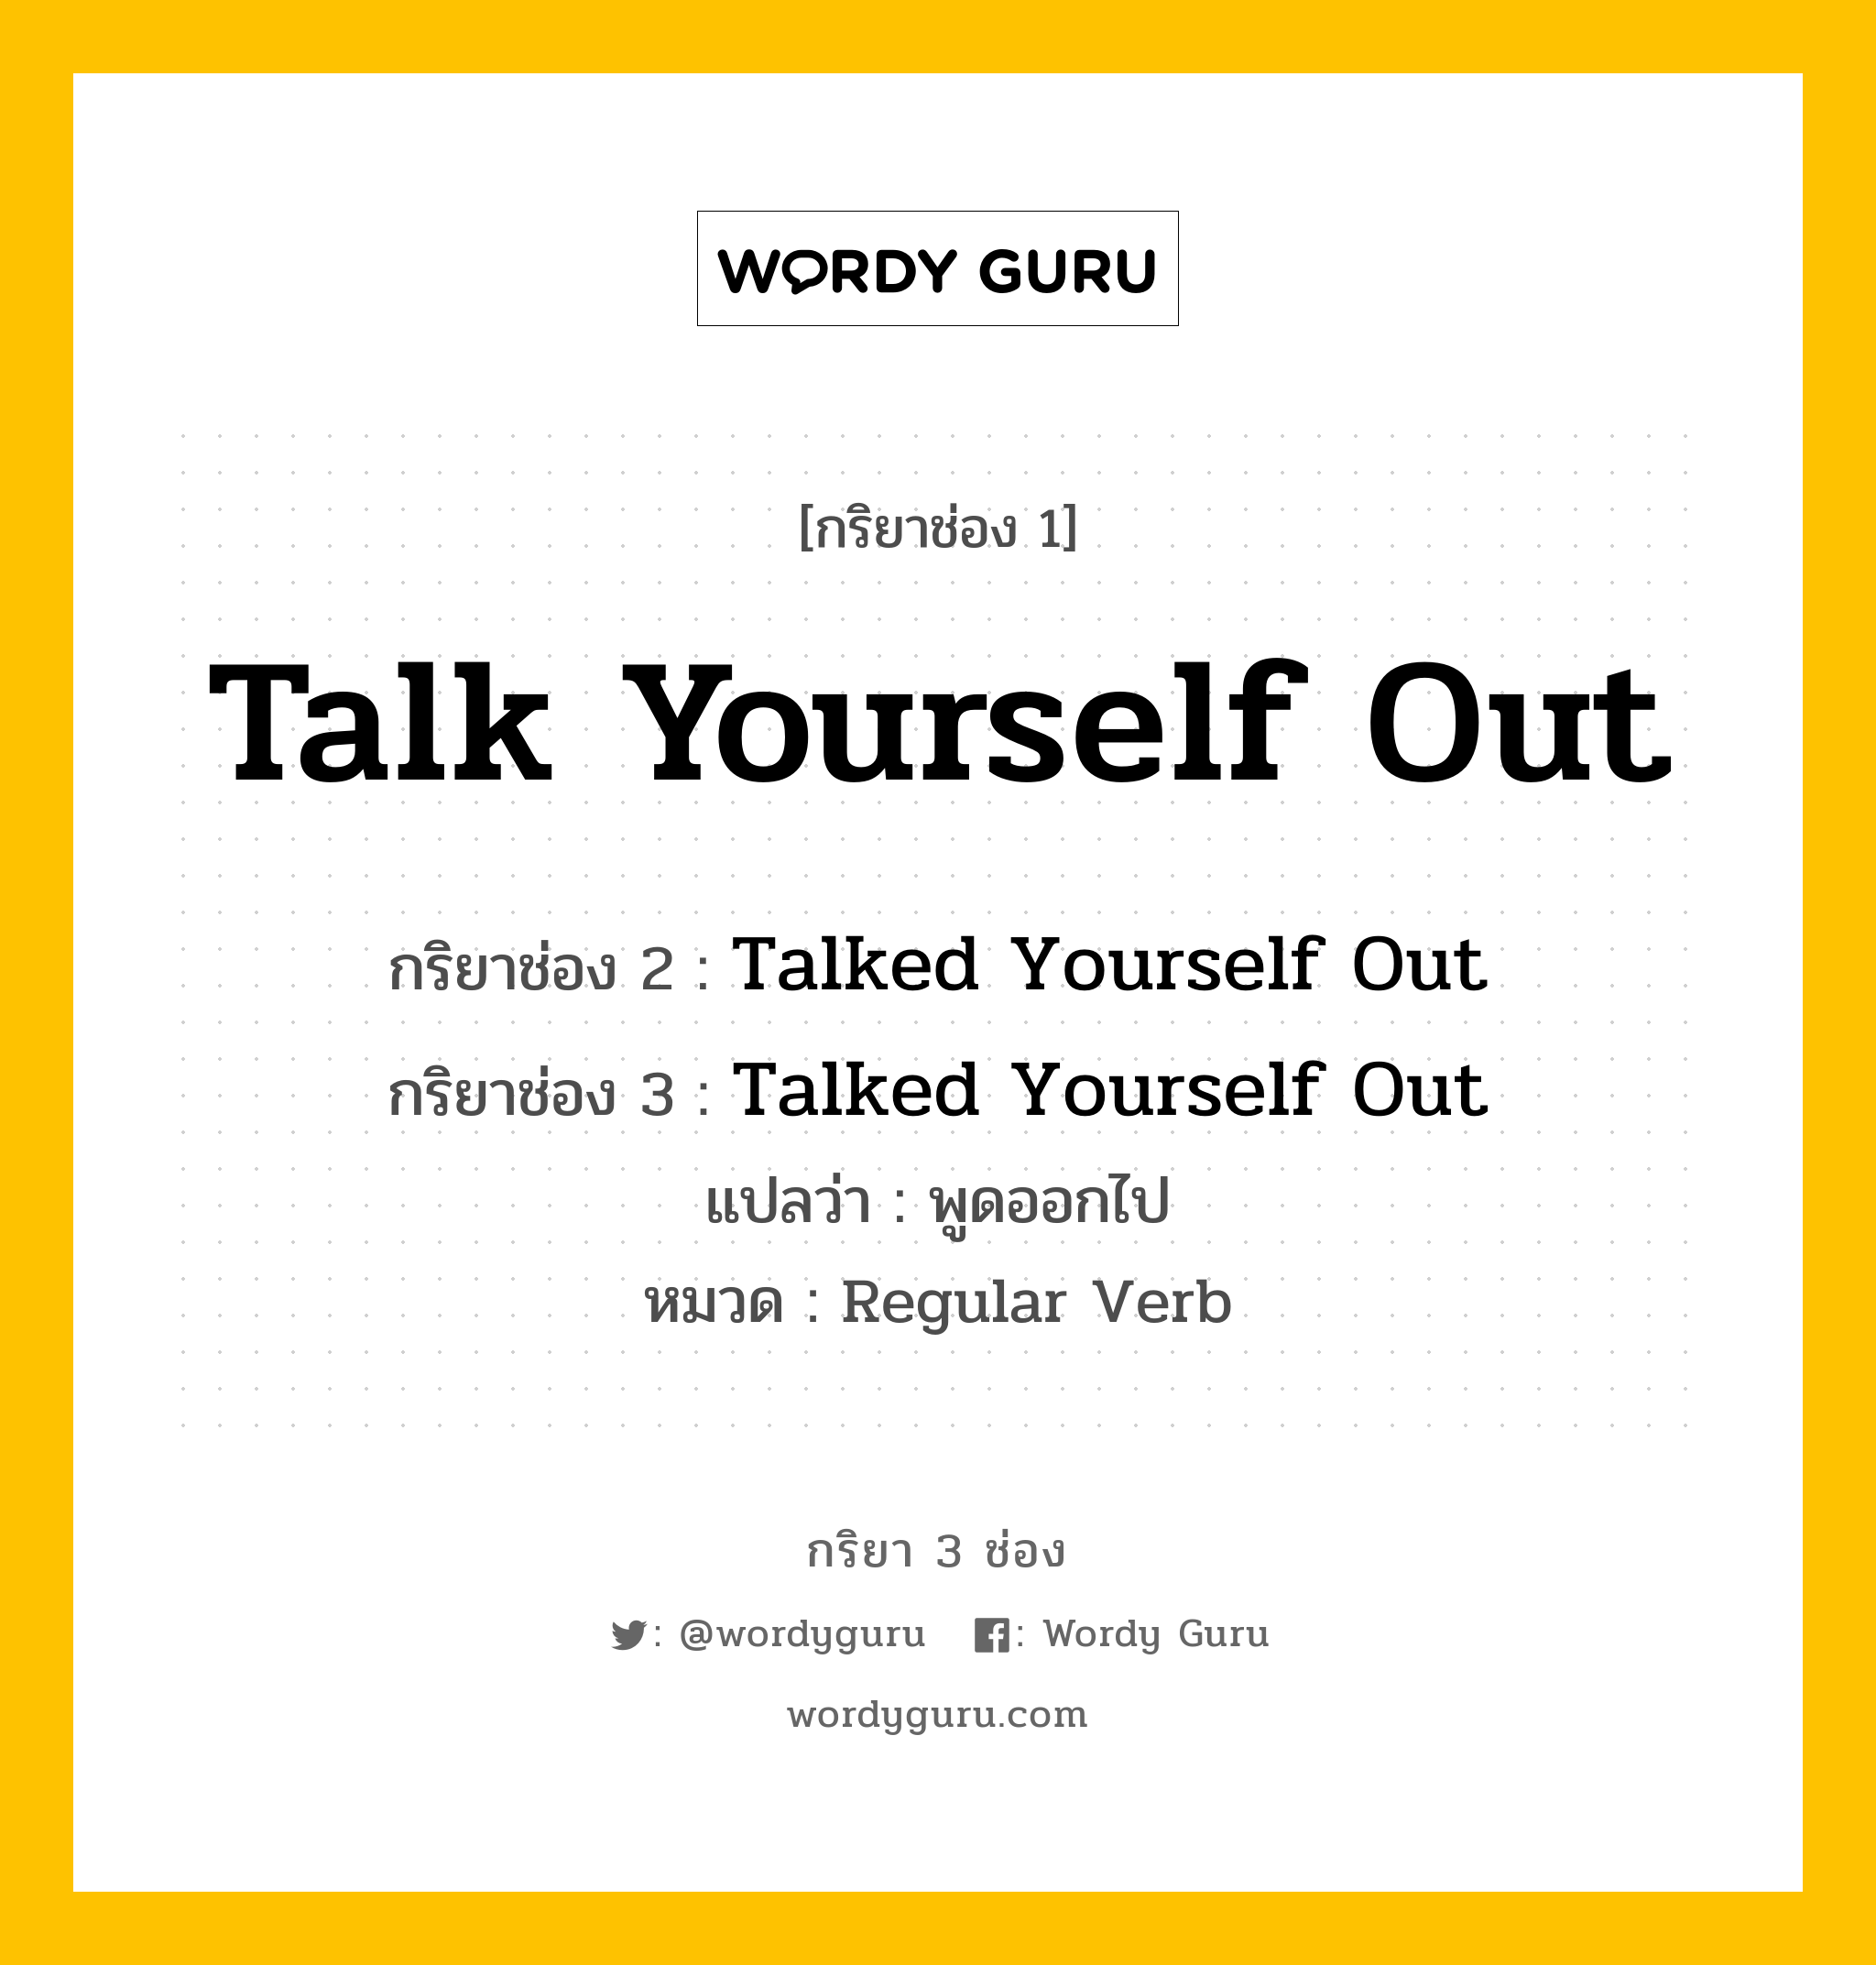 กริยา 3 ช่อง: Talk Yourself Out ช่อง 2 Talk Yourself Out ช่อง 3 คืออะไร, กริยาช่อง 1 Talk Yourself Out กริยาช่อง 2 Talked Yourself Out กริยาช่อง 3 Talked Yourself Out แปลว่า พูดออกไป หมวด Regular Verb หมวด Regular Verb